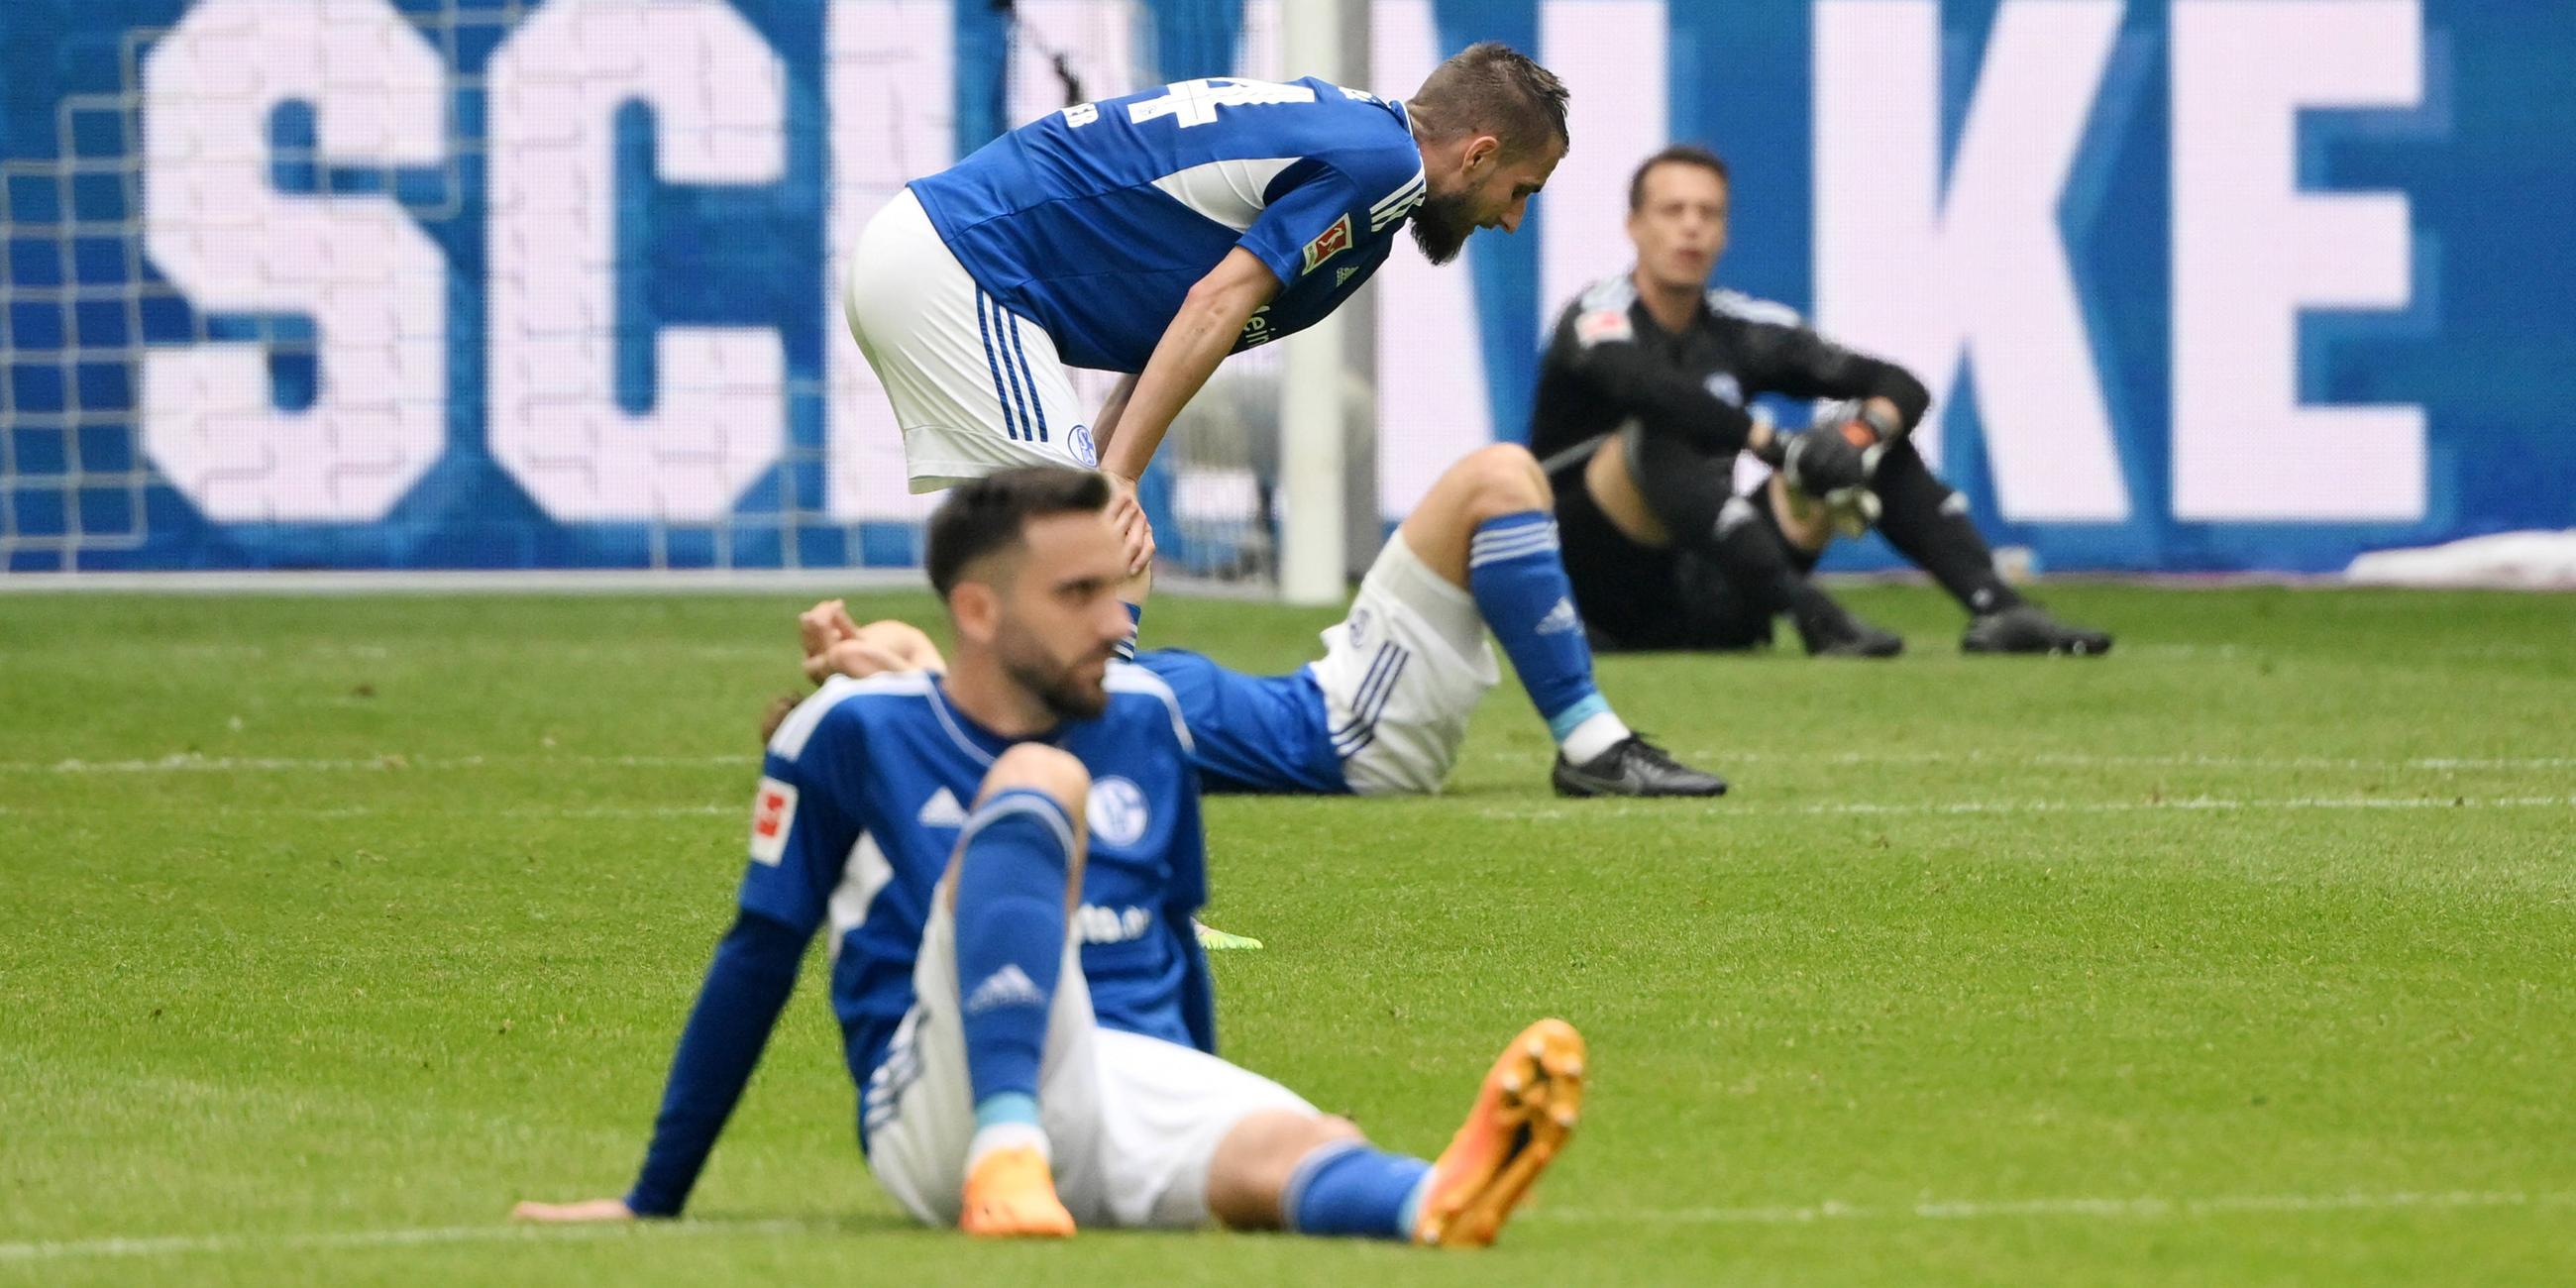 Schalkes Spieler nach dem Abpfiff